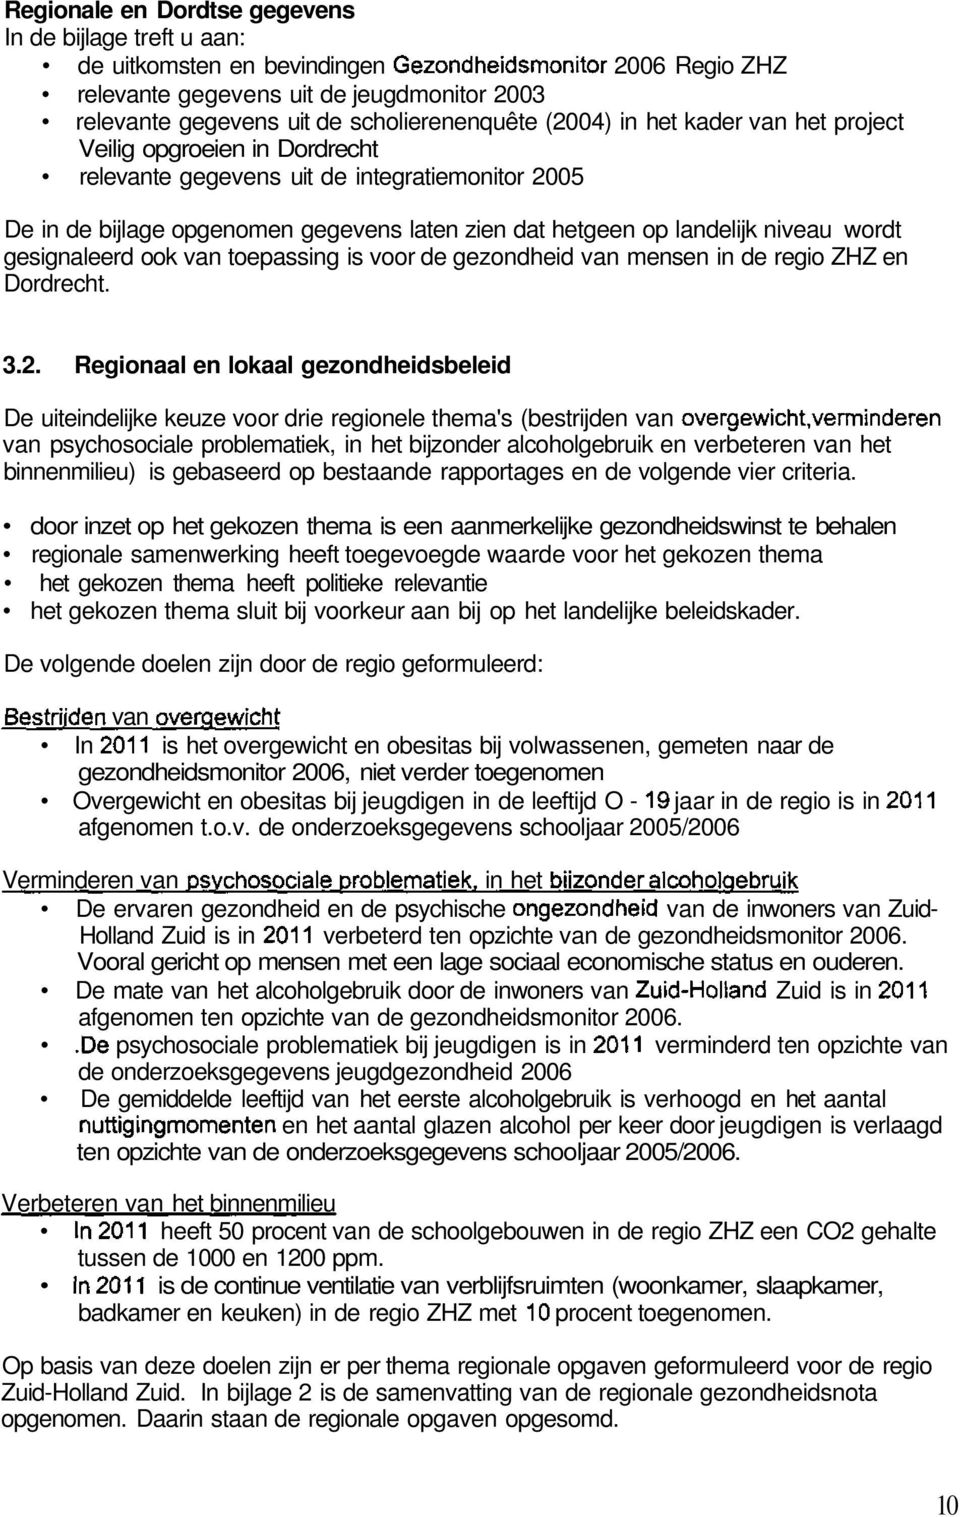 landelijk niveau wordt gesignaleerd ook van toepassing is voor de gezondheid van mensen in de regio ZHZ en Dordrecht. 3.2.